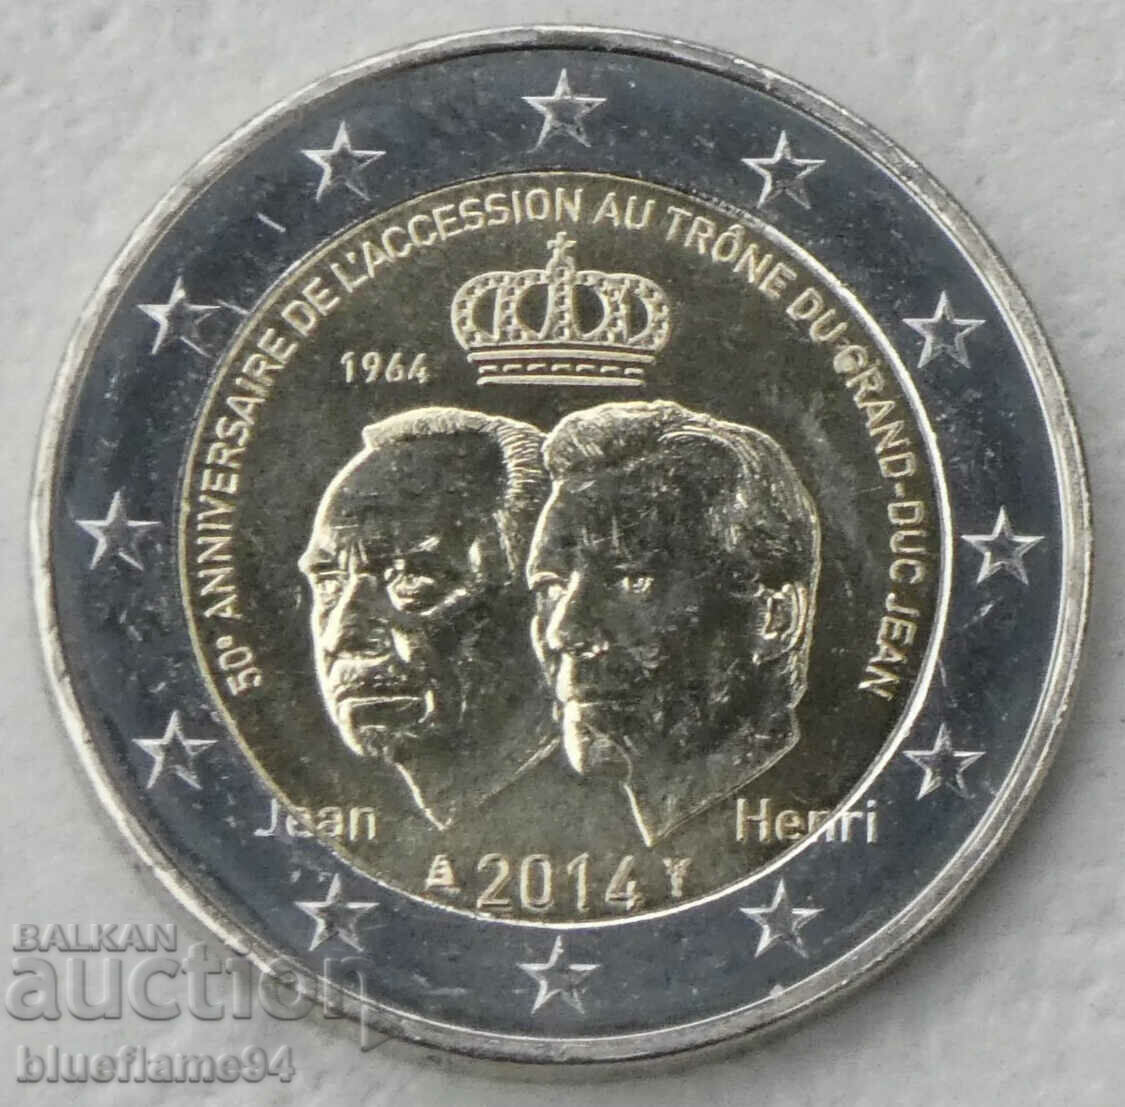 2 euro Luxemburg 2014